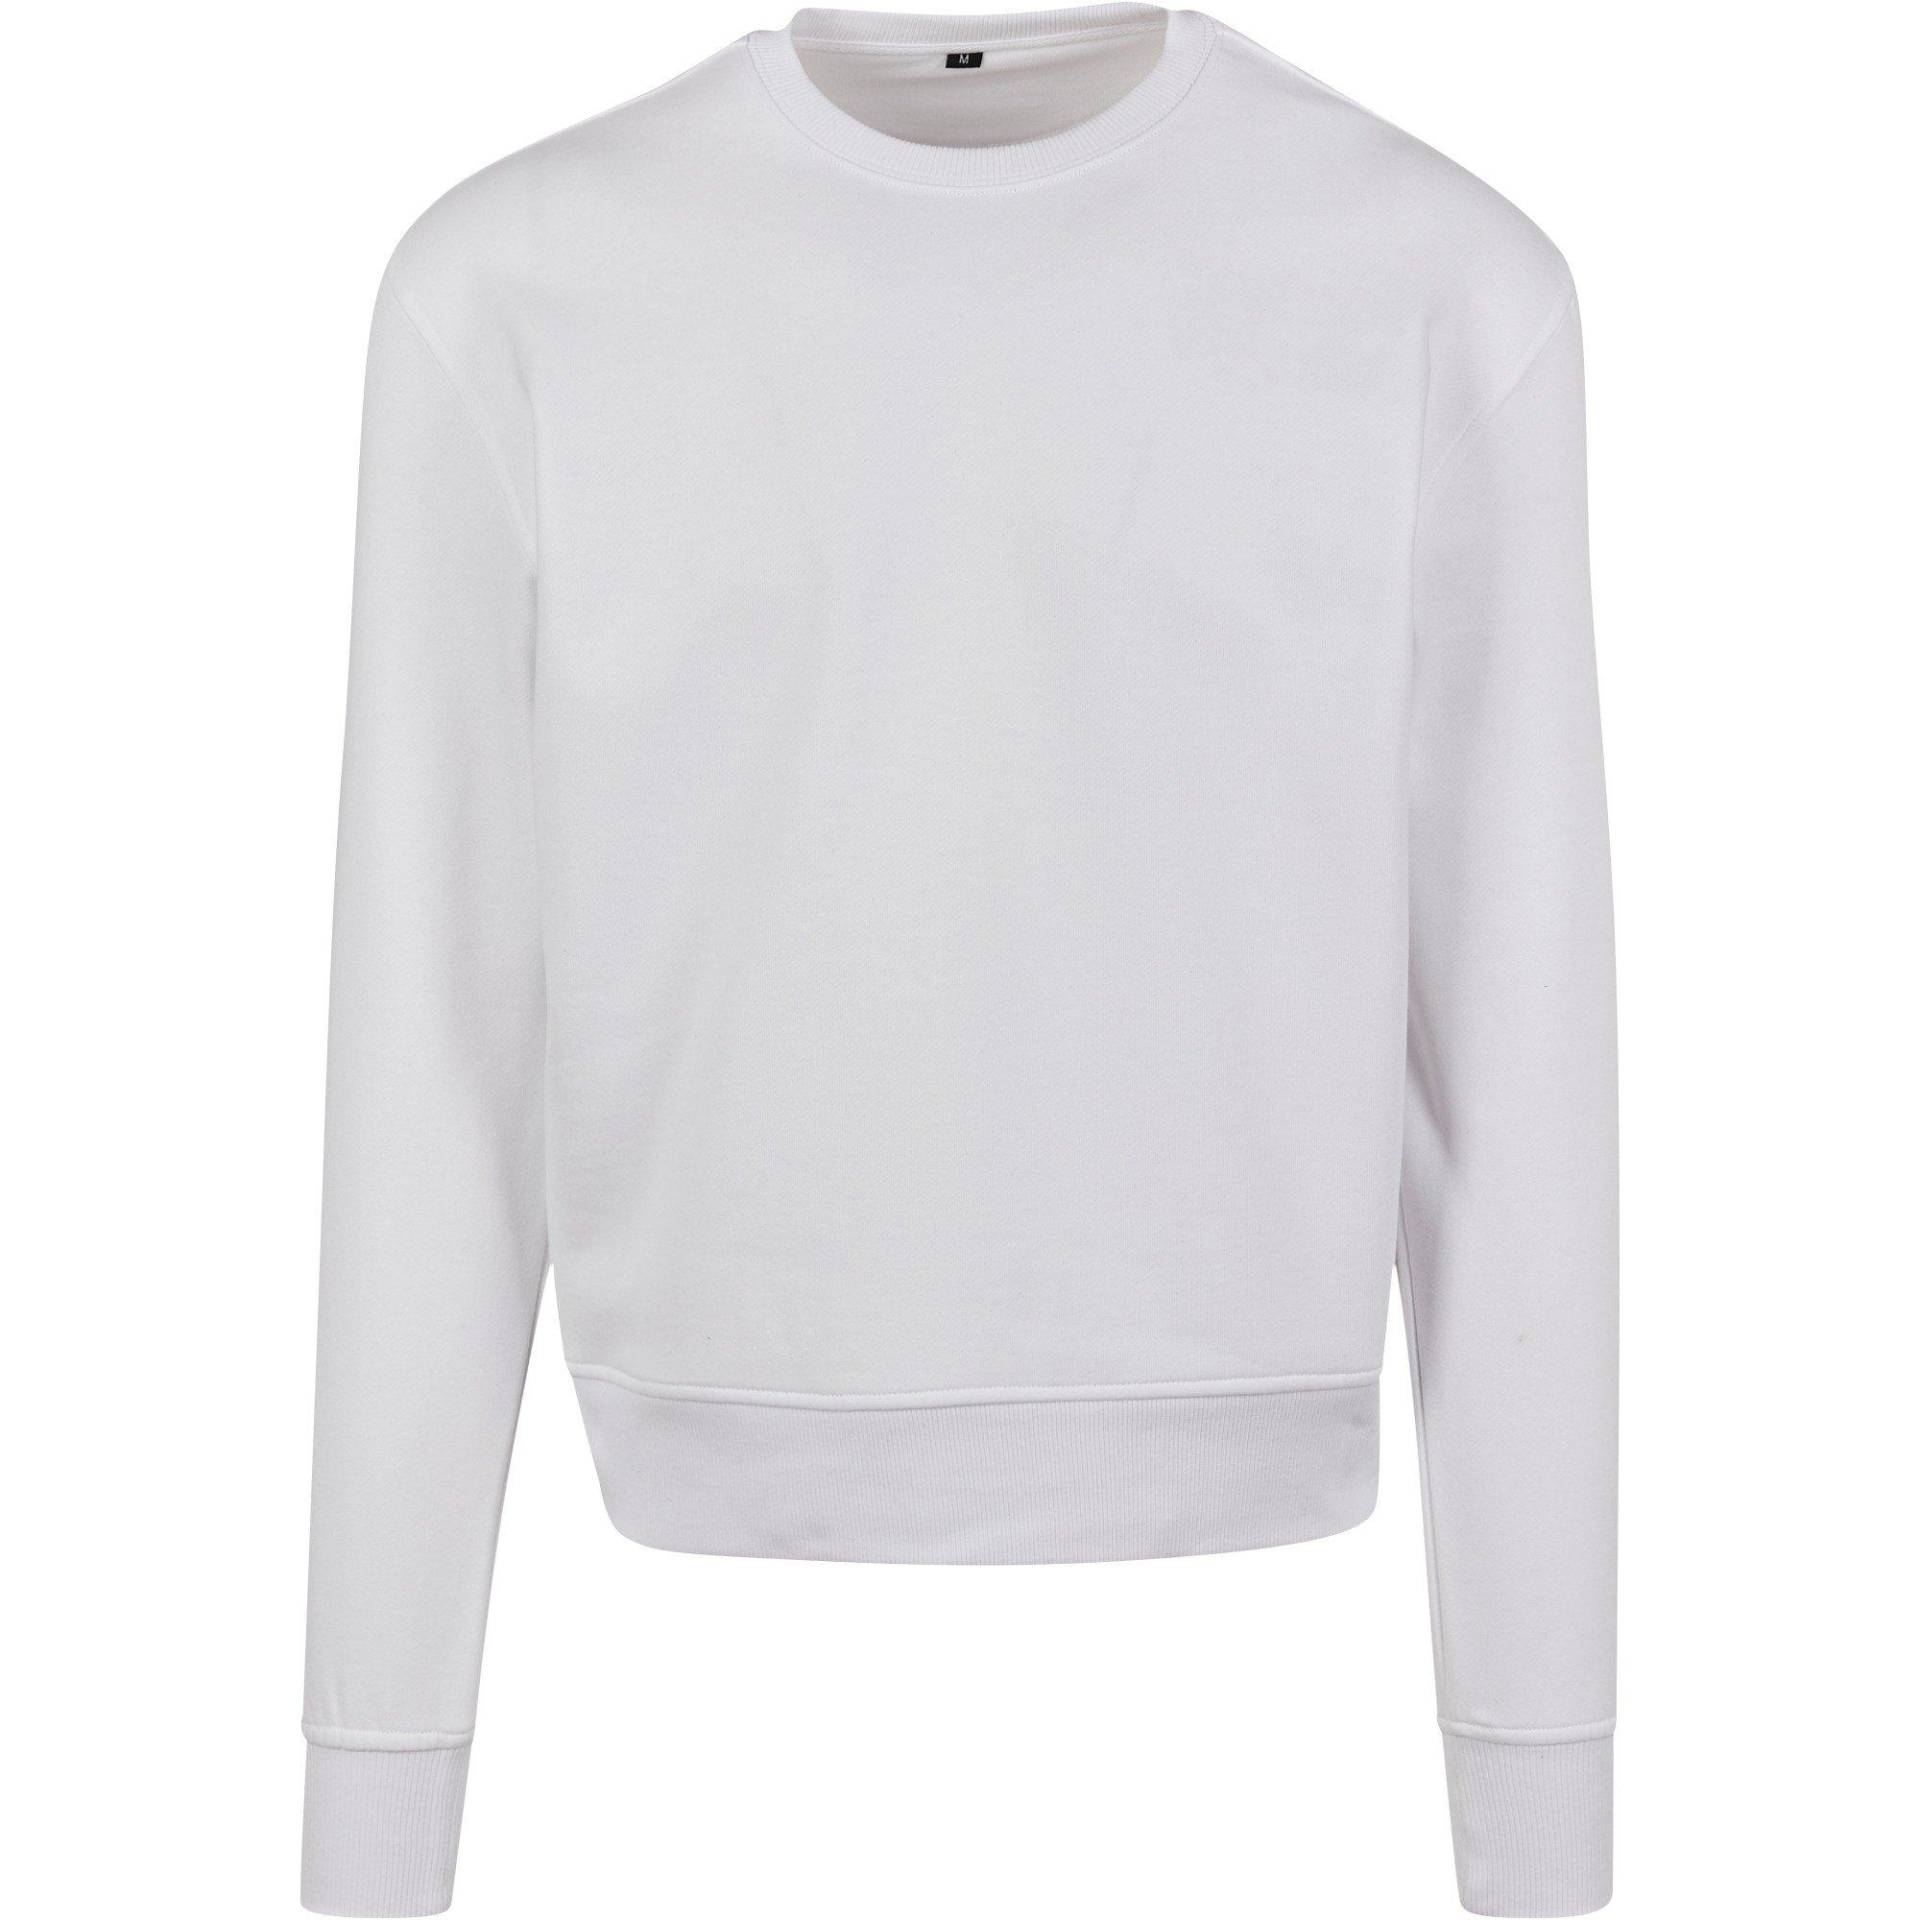 Premium Sweatshirt Damen Weiss S von Build Your Own